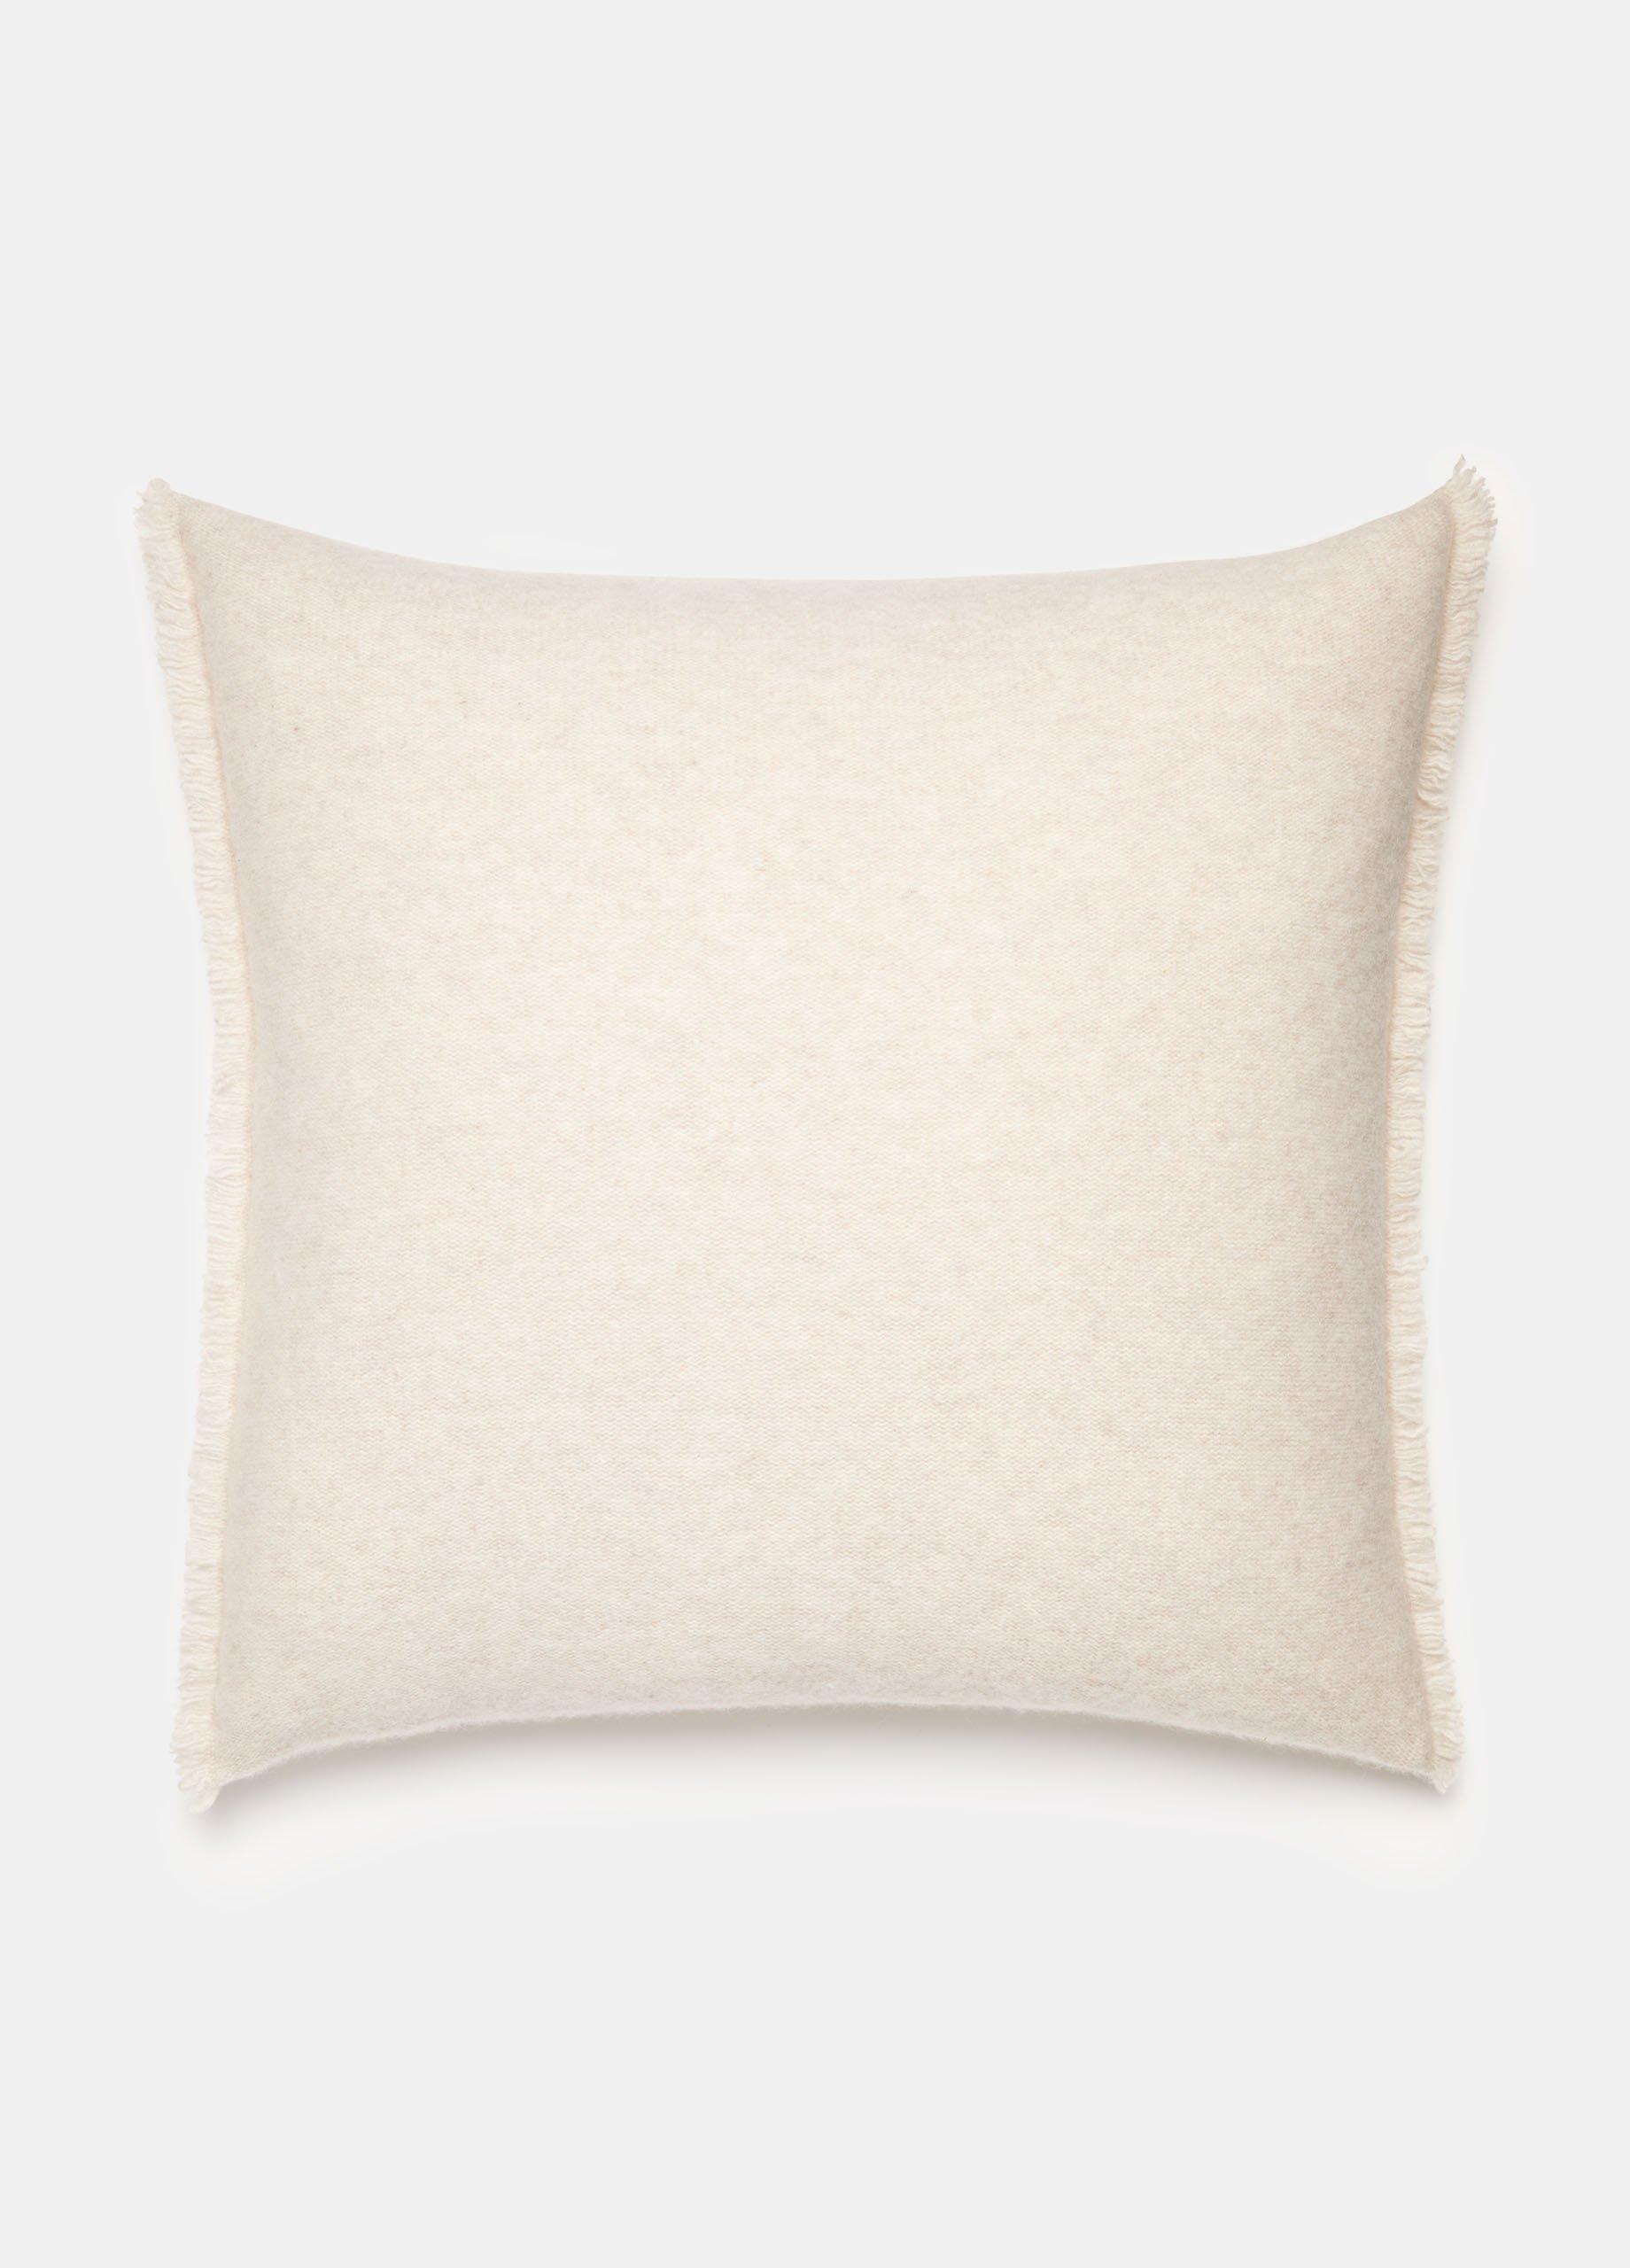 Plush Cashmere Square Pillow